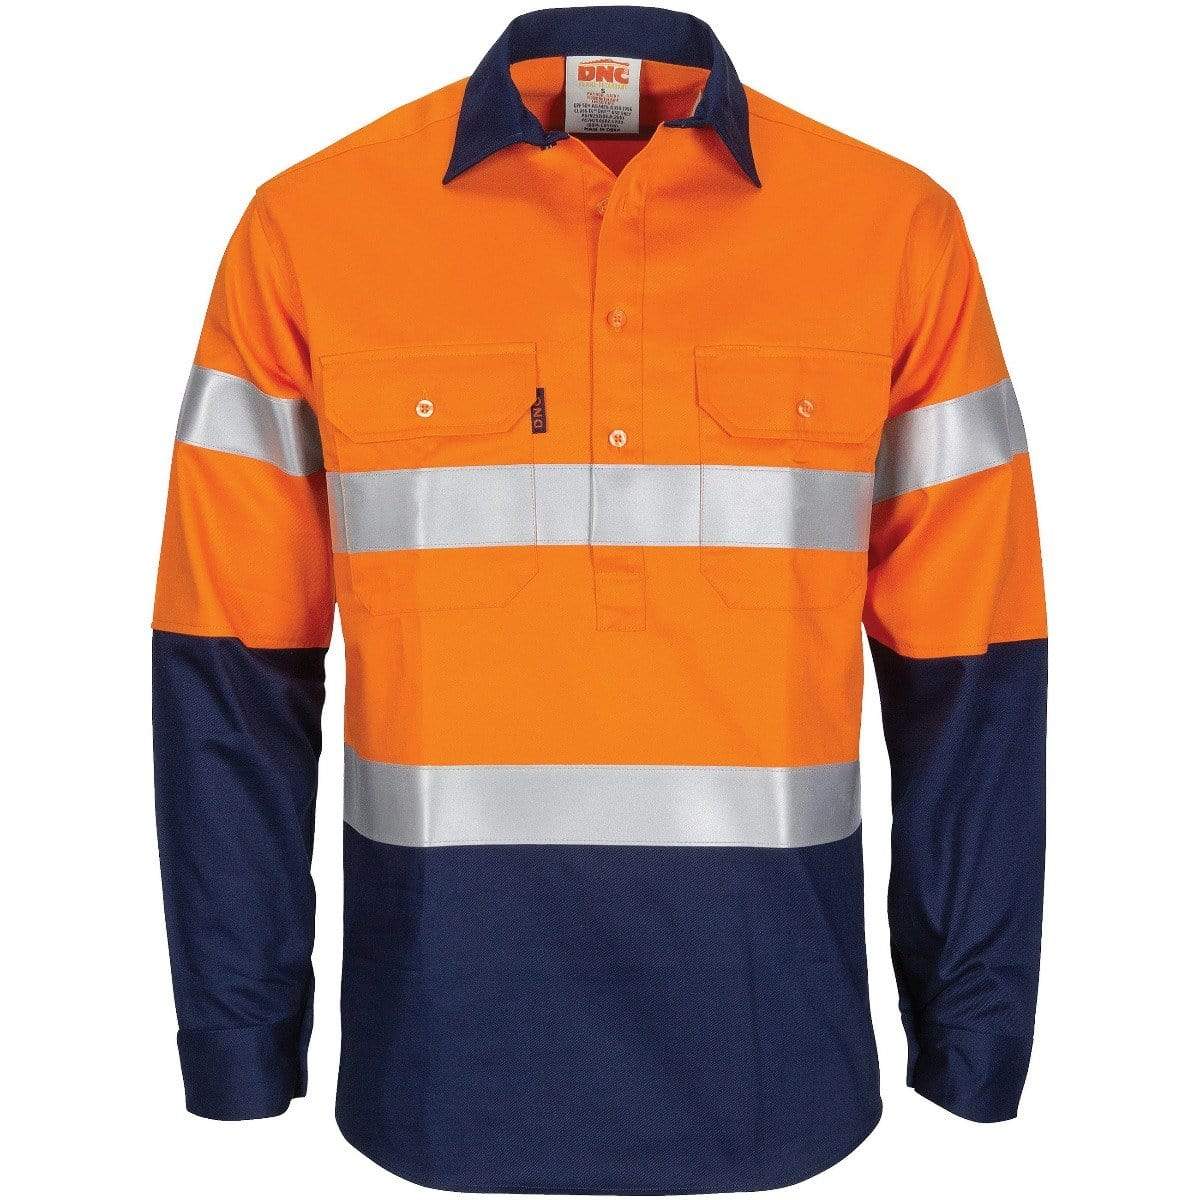 Flame Retardant Shirt Work Wear DNC Workwear Orange/Navy XS 